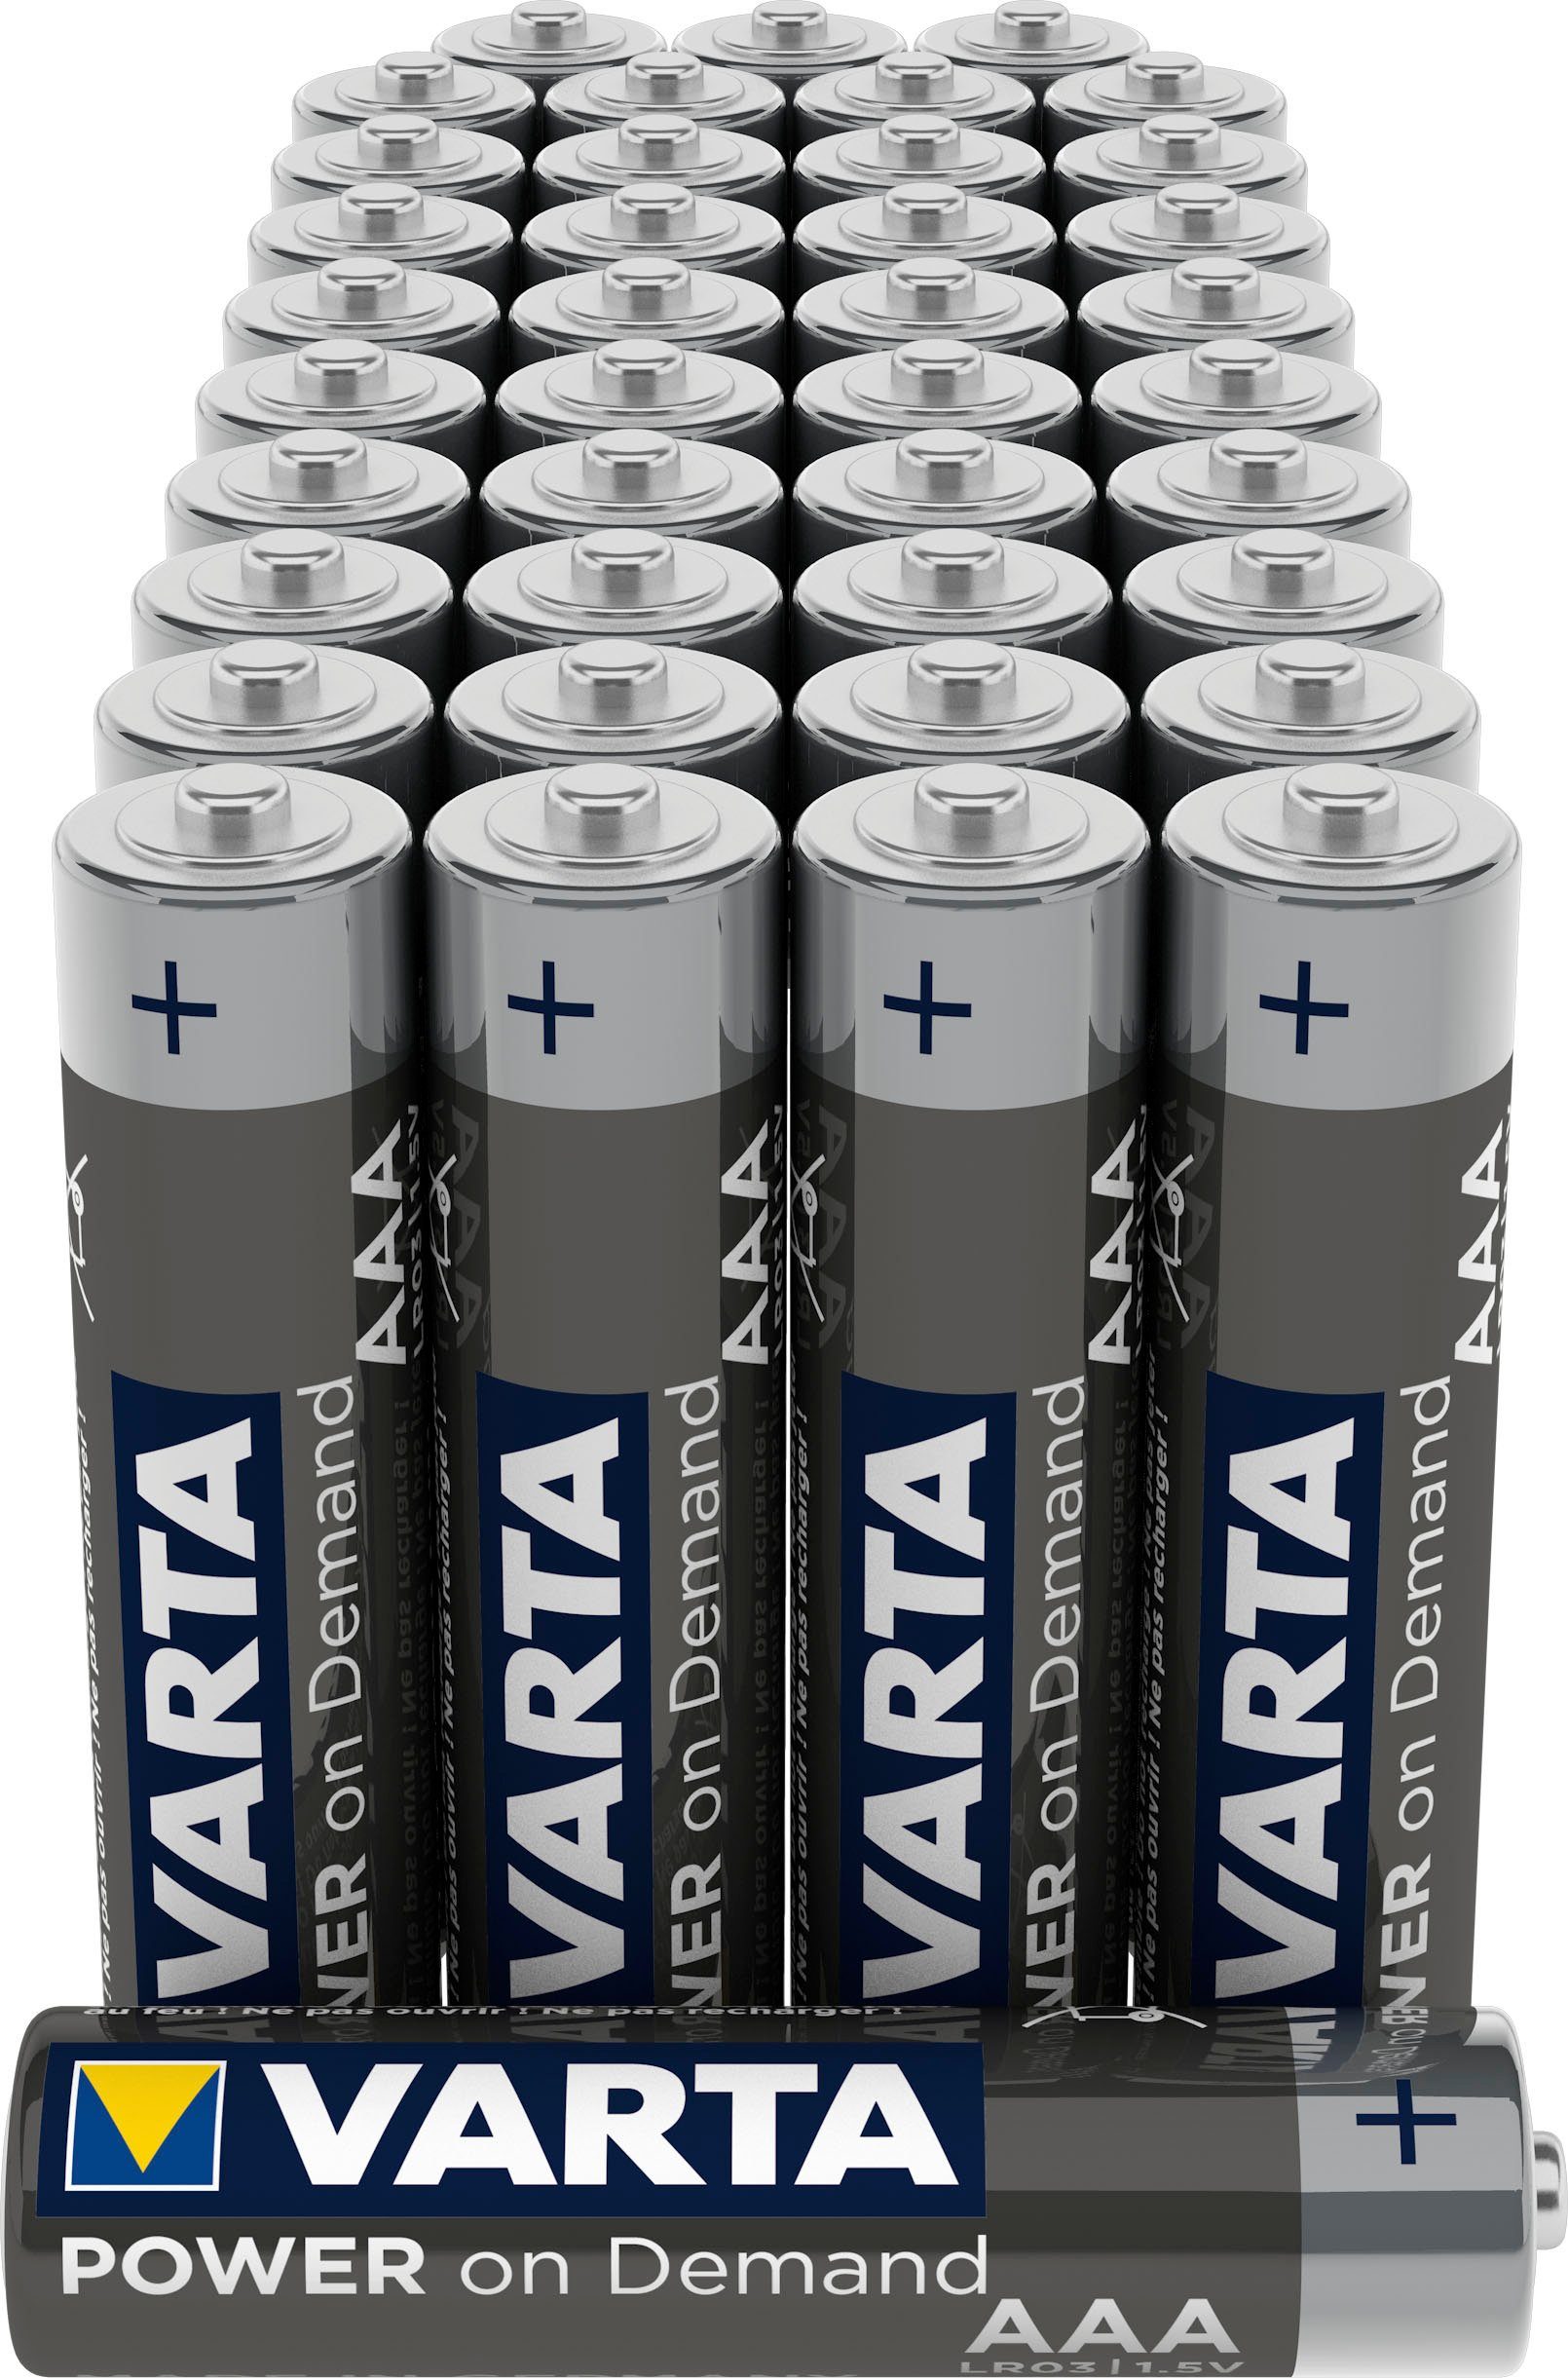 VARTA VARTA Power Pack V, Alkaline (1,5 40er 40 St) Micro Batterie, Demand On BatterieAAA LR03